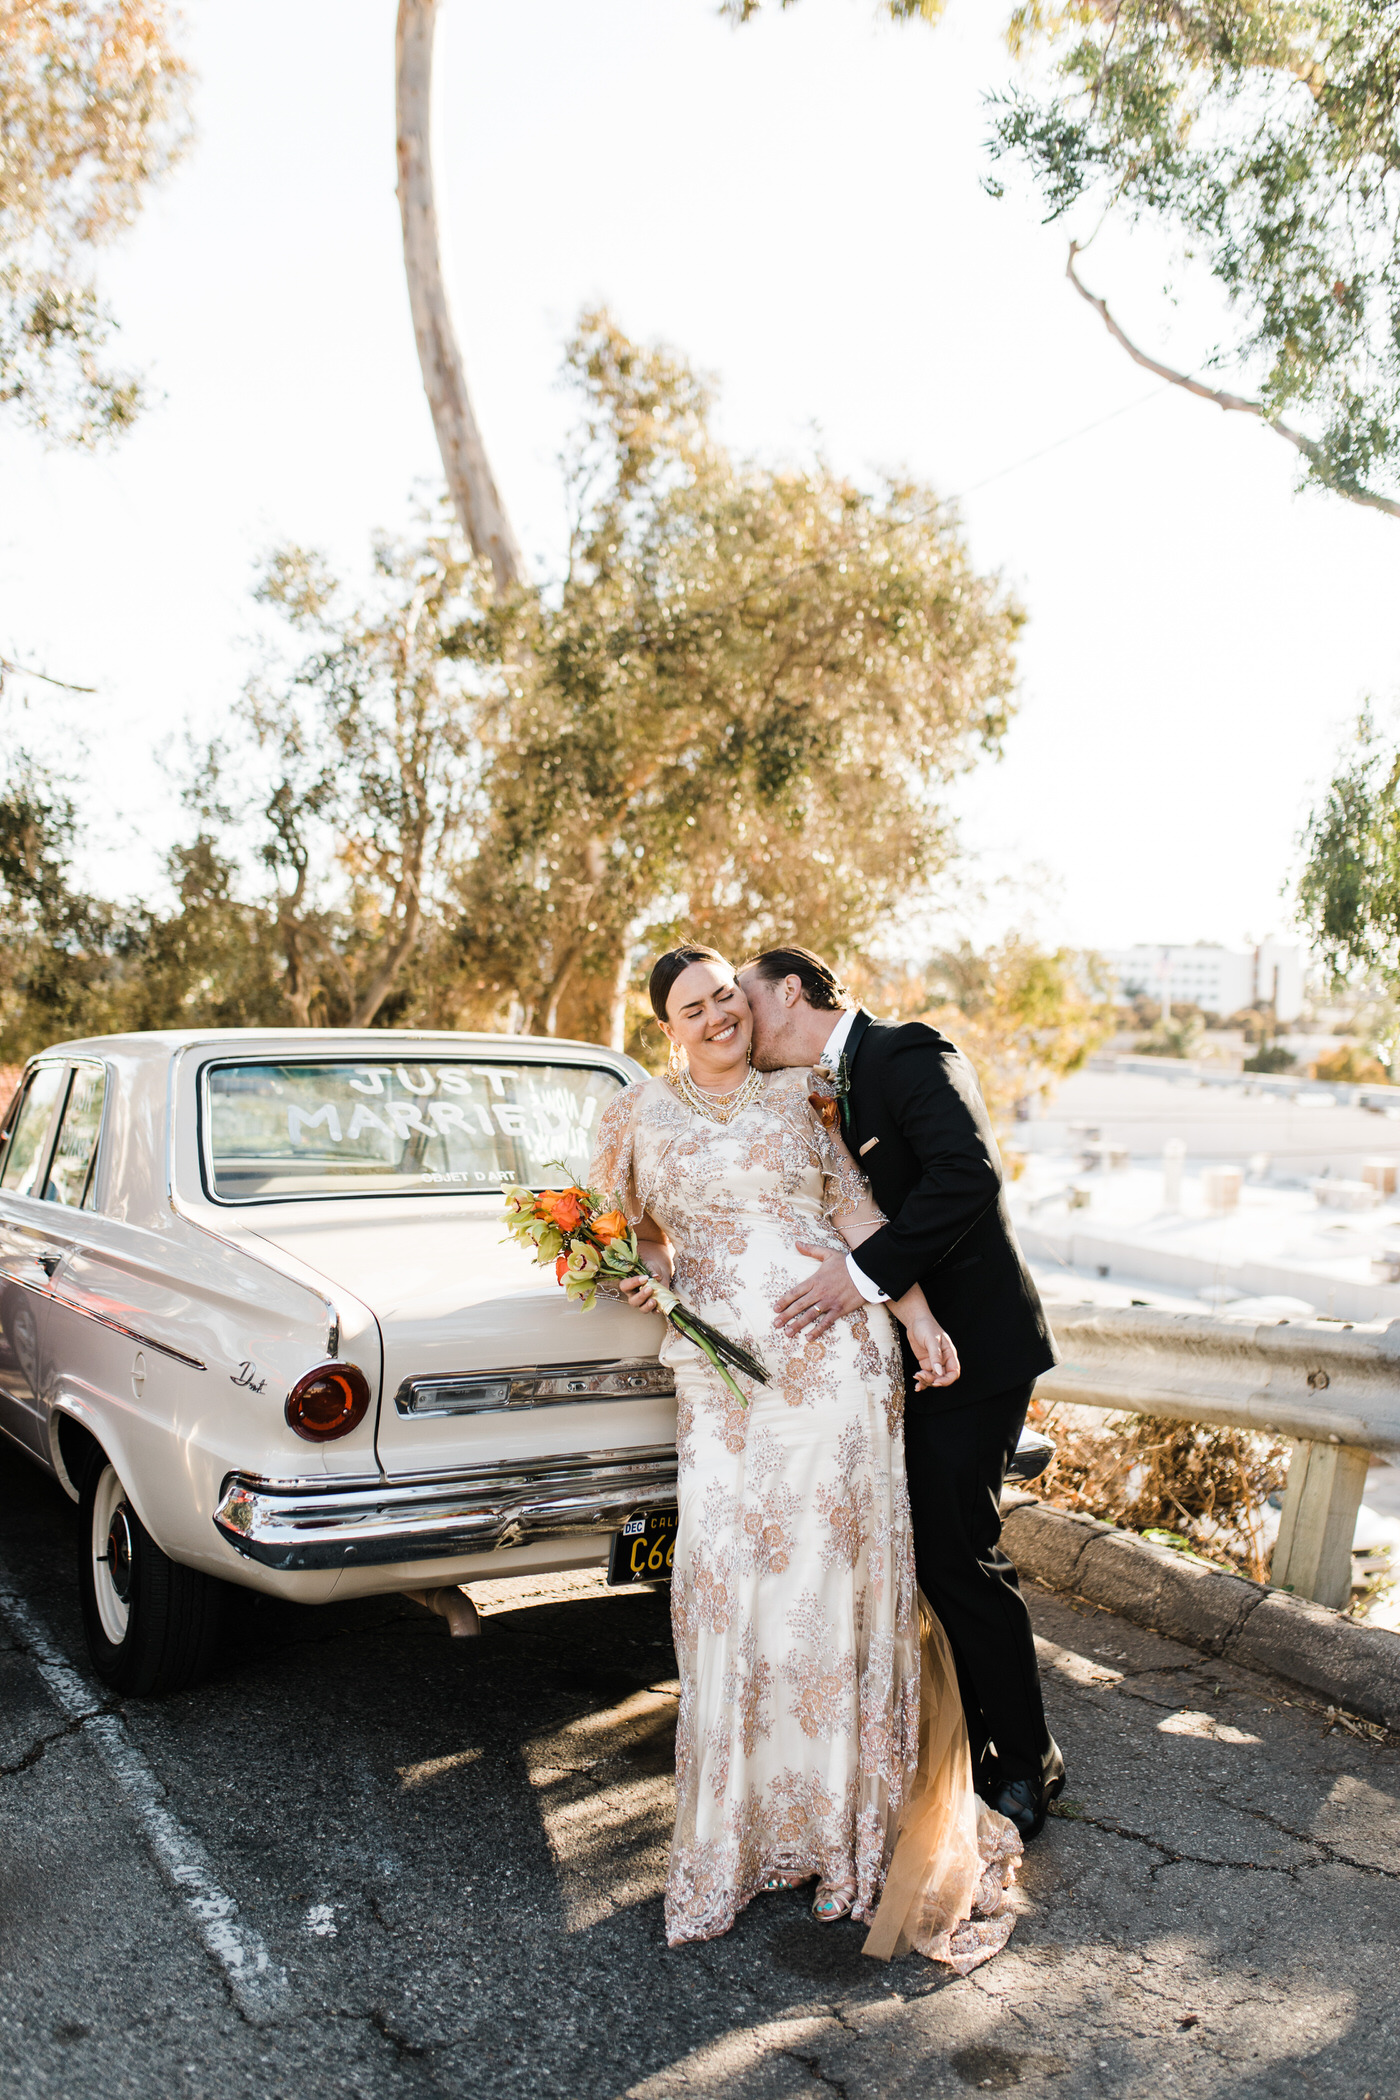 Martina & Niko - Mission San Buenaventura, Ventura, CA - Wedding ...